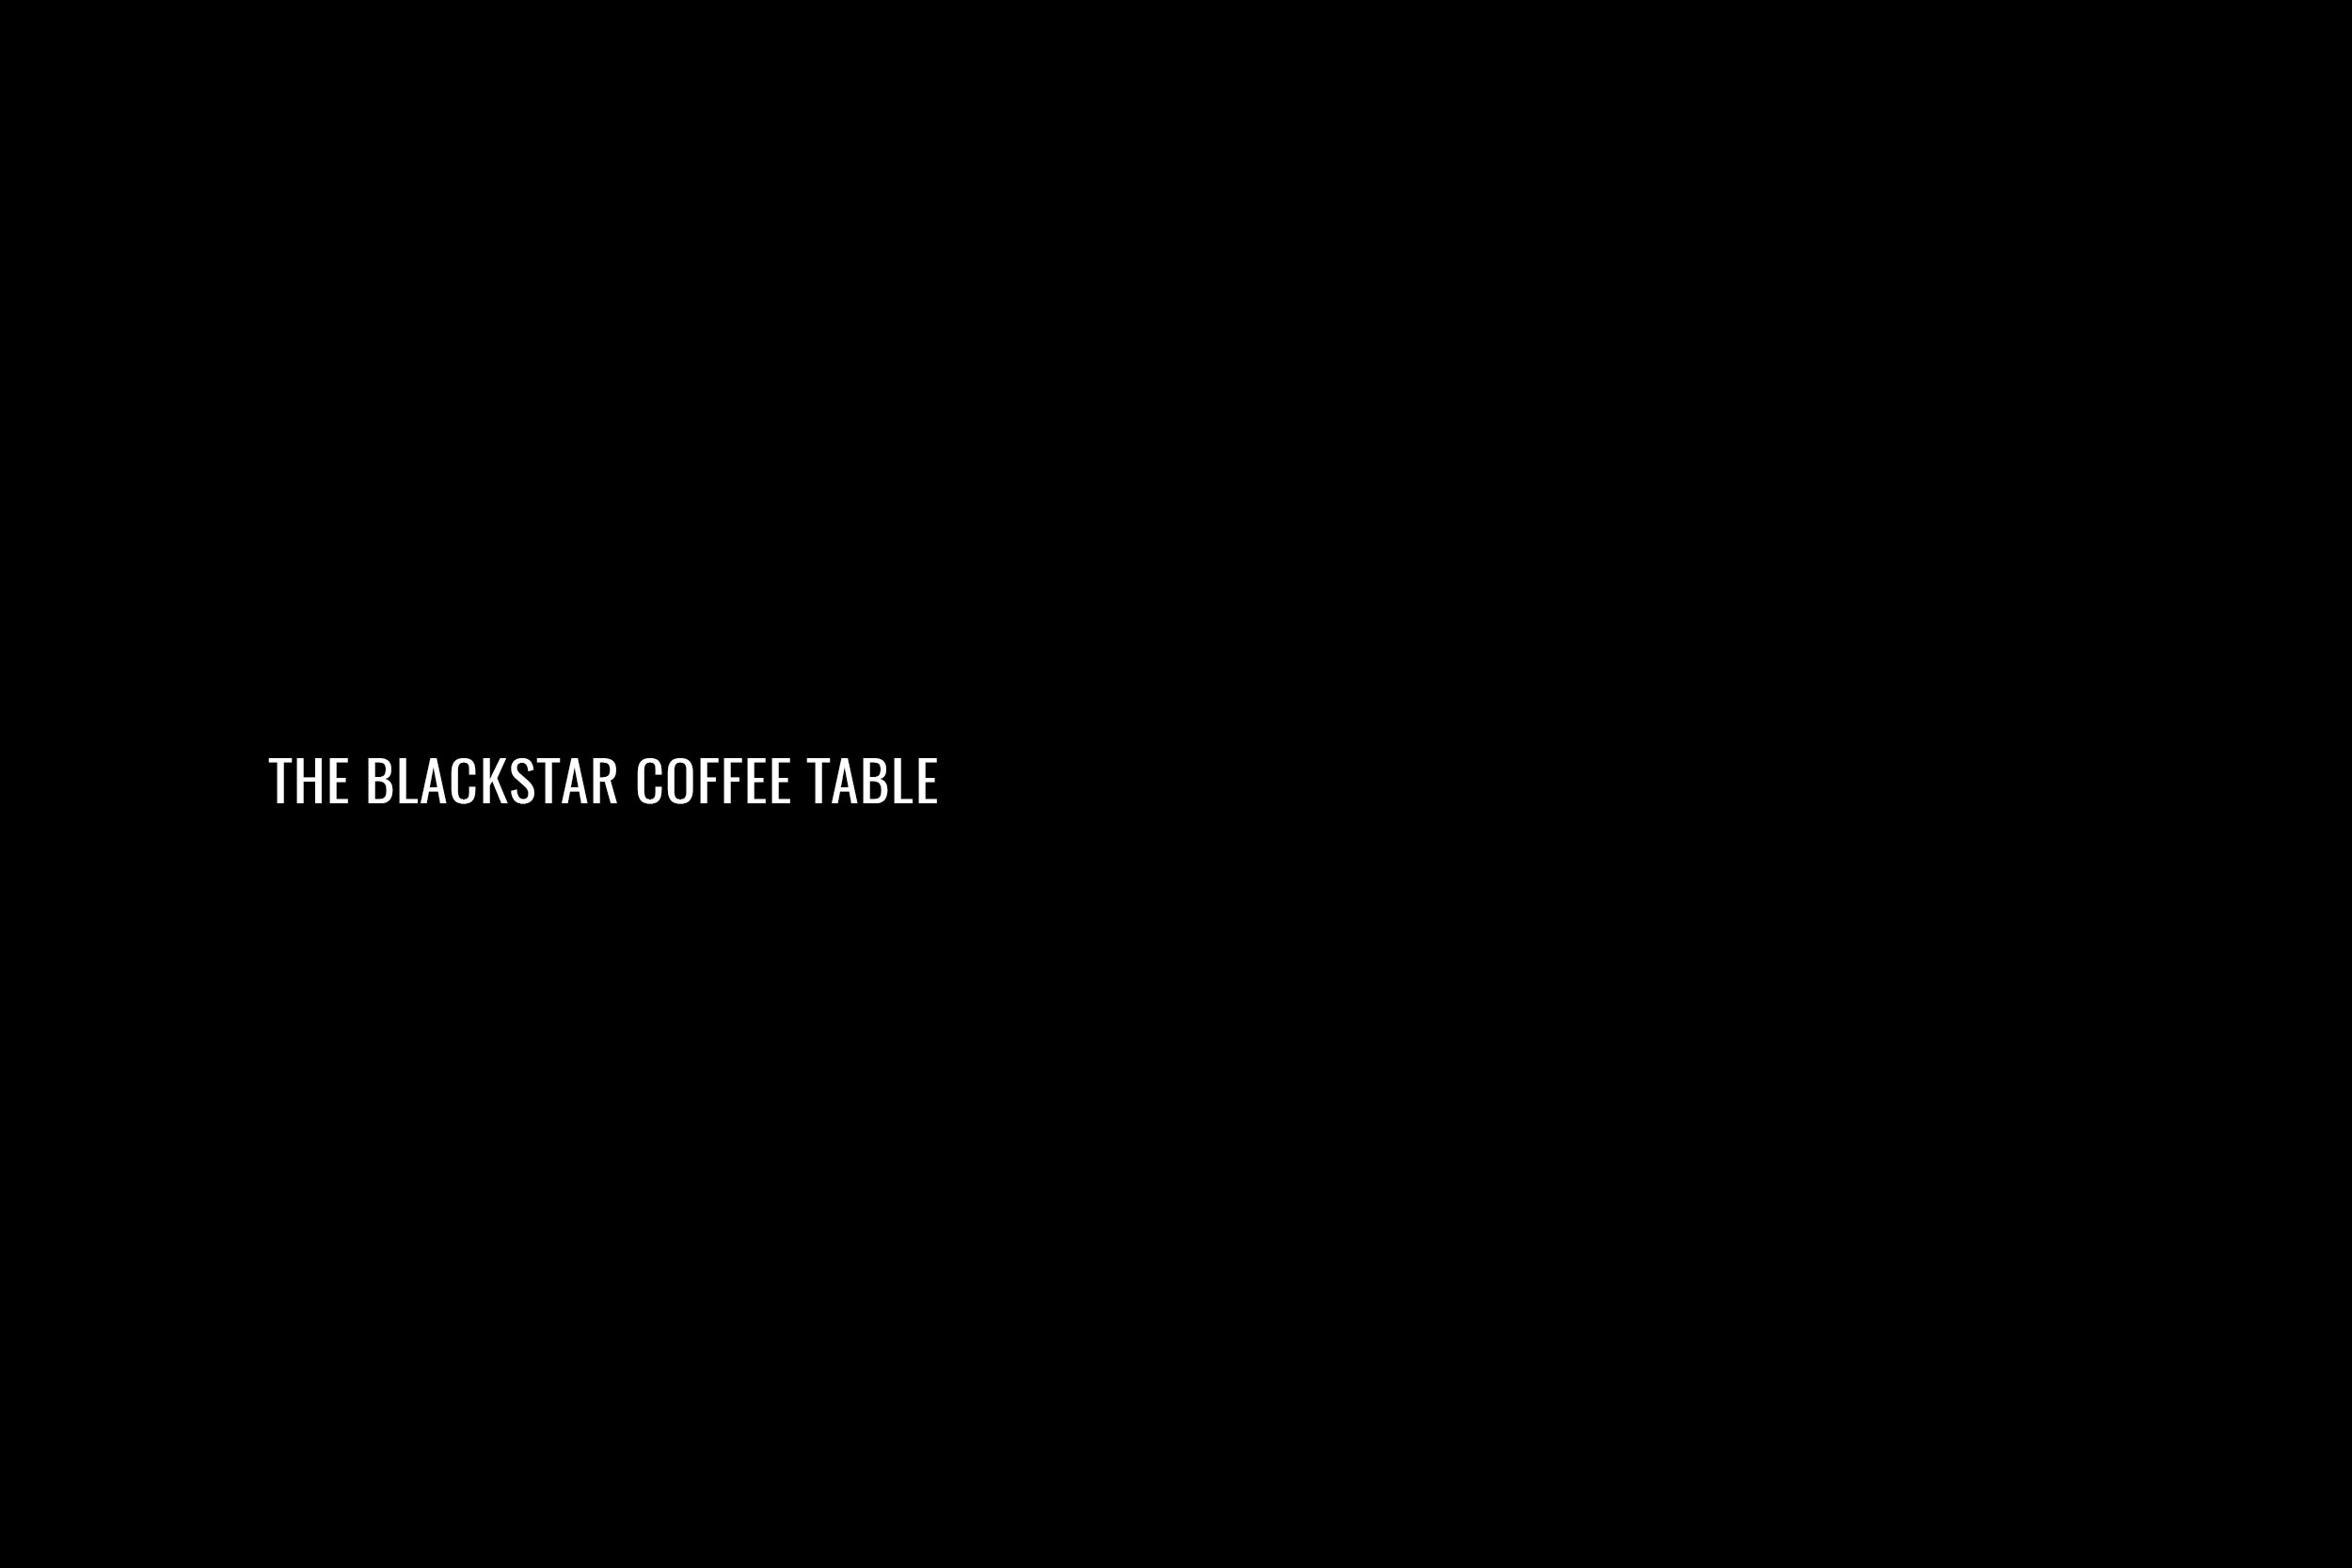 Bowie-Slideshow-Blackstar-coffee-table.jpg